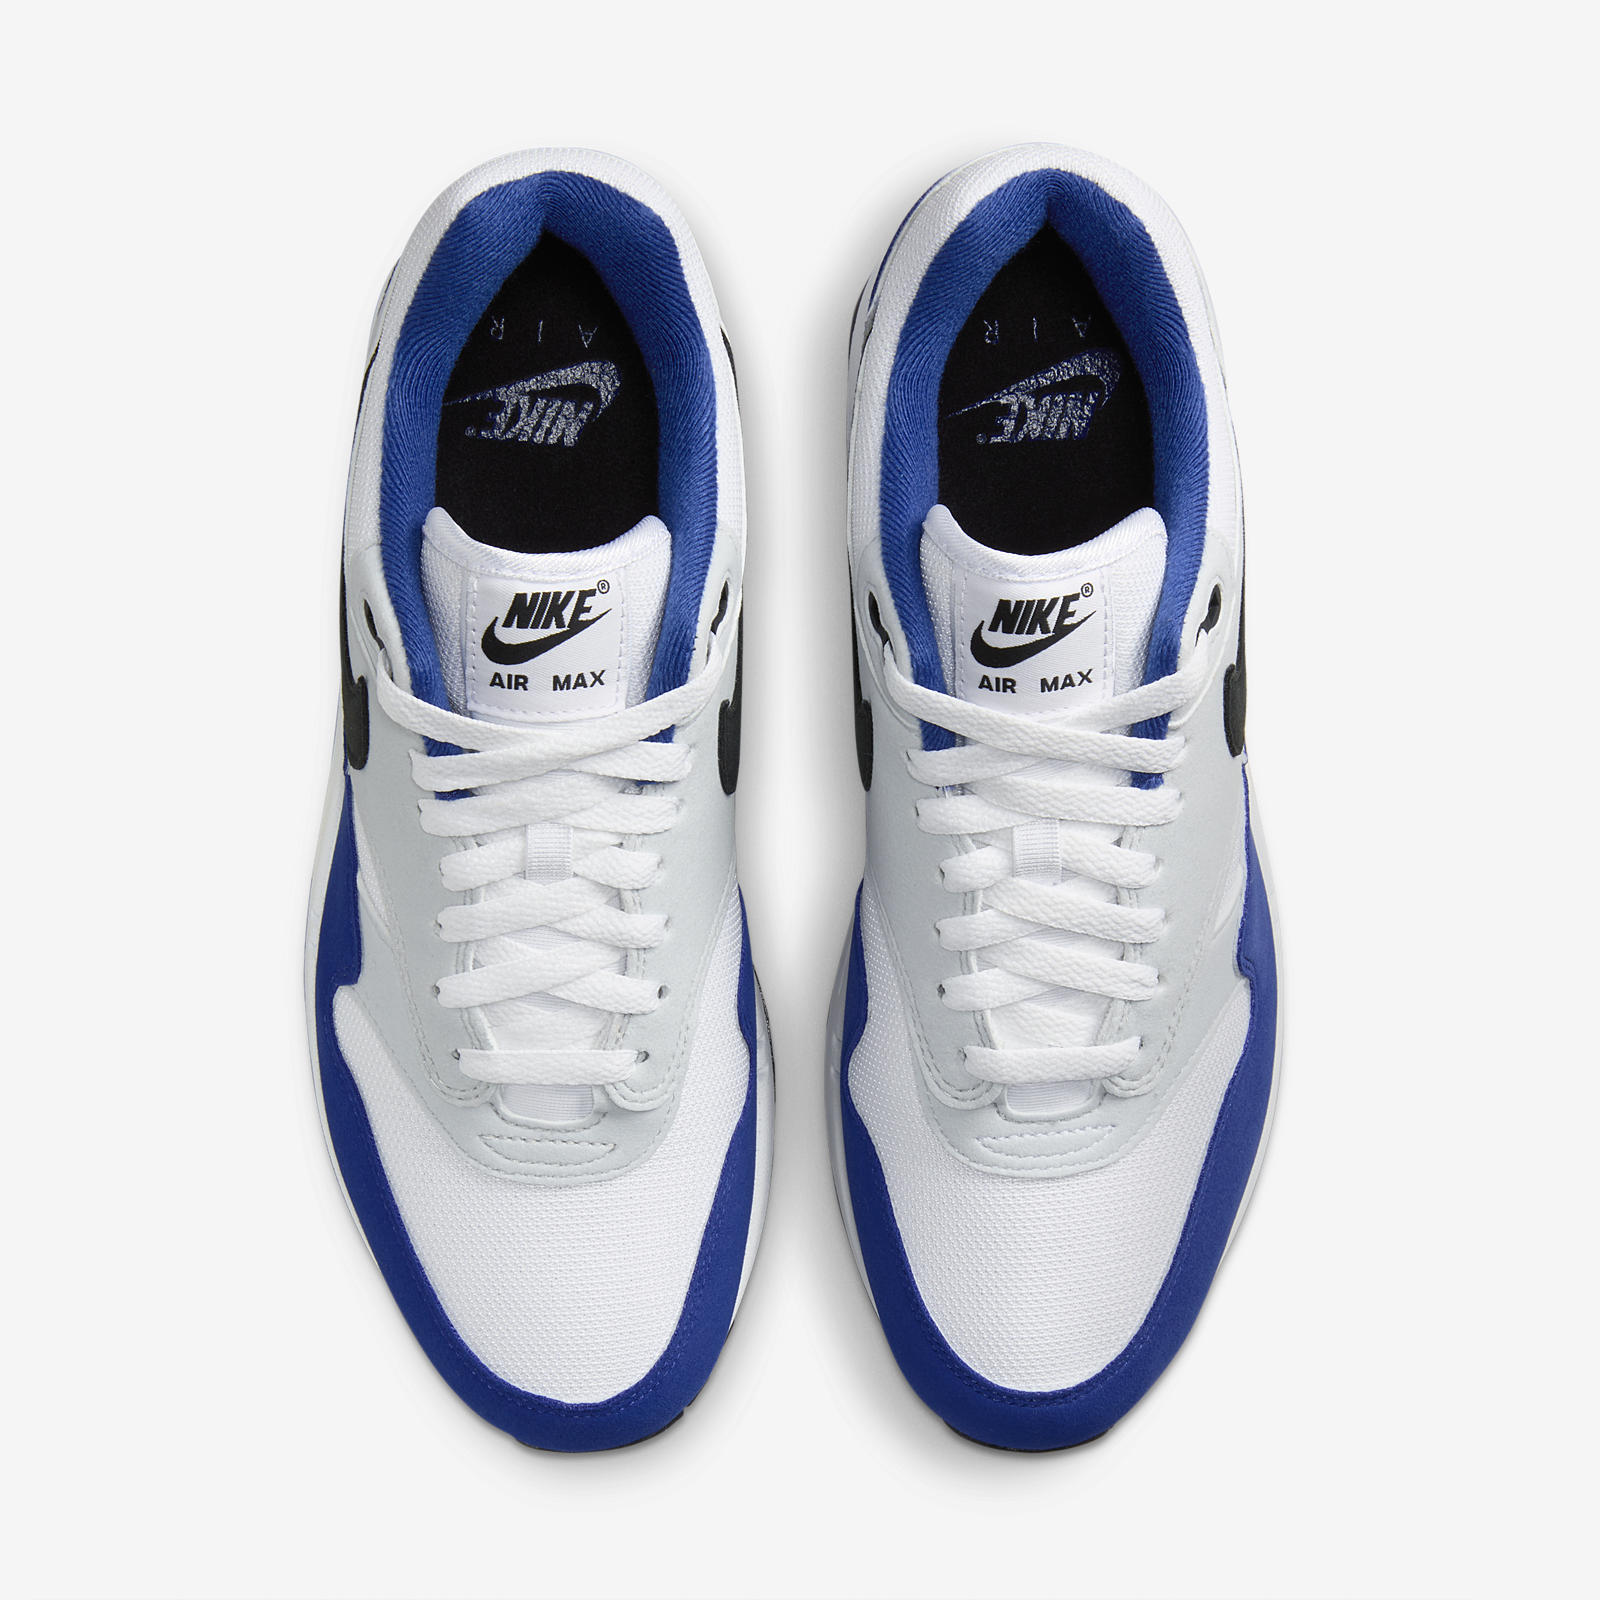 Nike Air Max 1
Deep Royal Blue